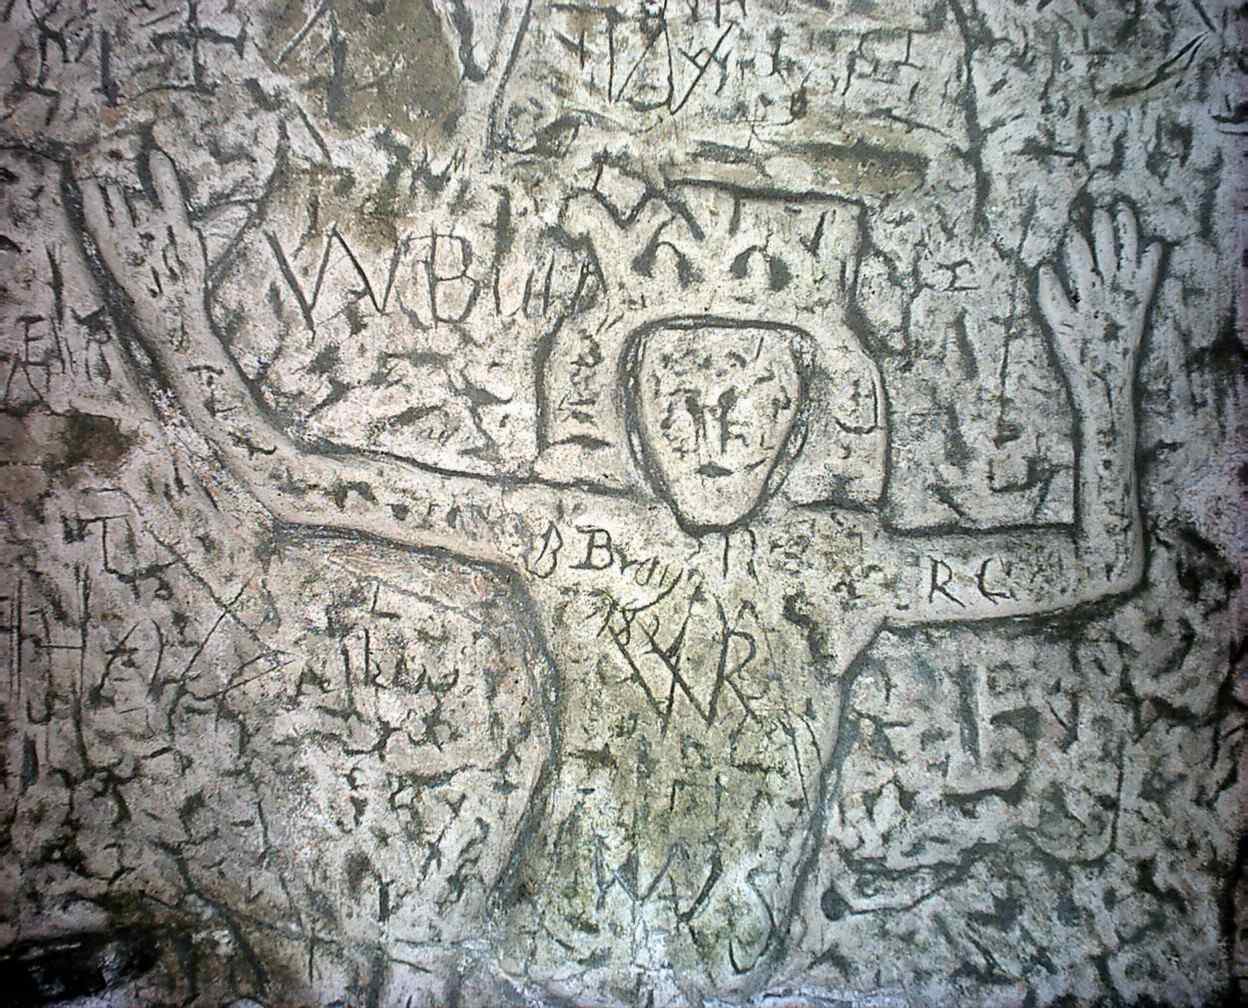 人造罗伊斯顿洞穴 2 中的神秘符号和雕刻